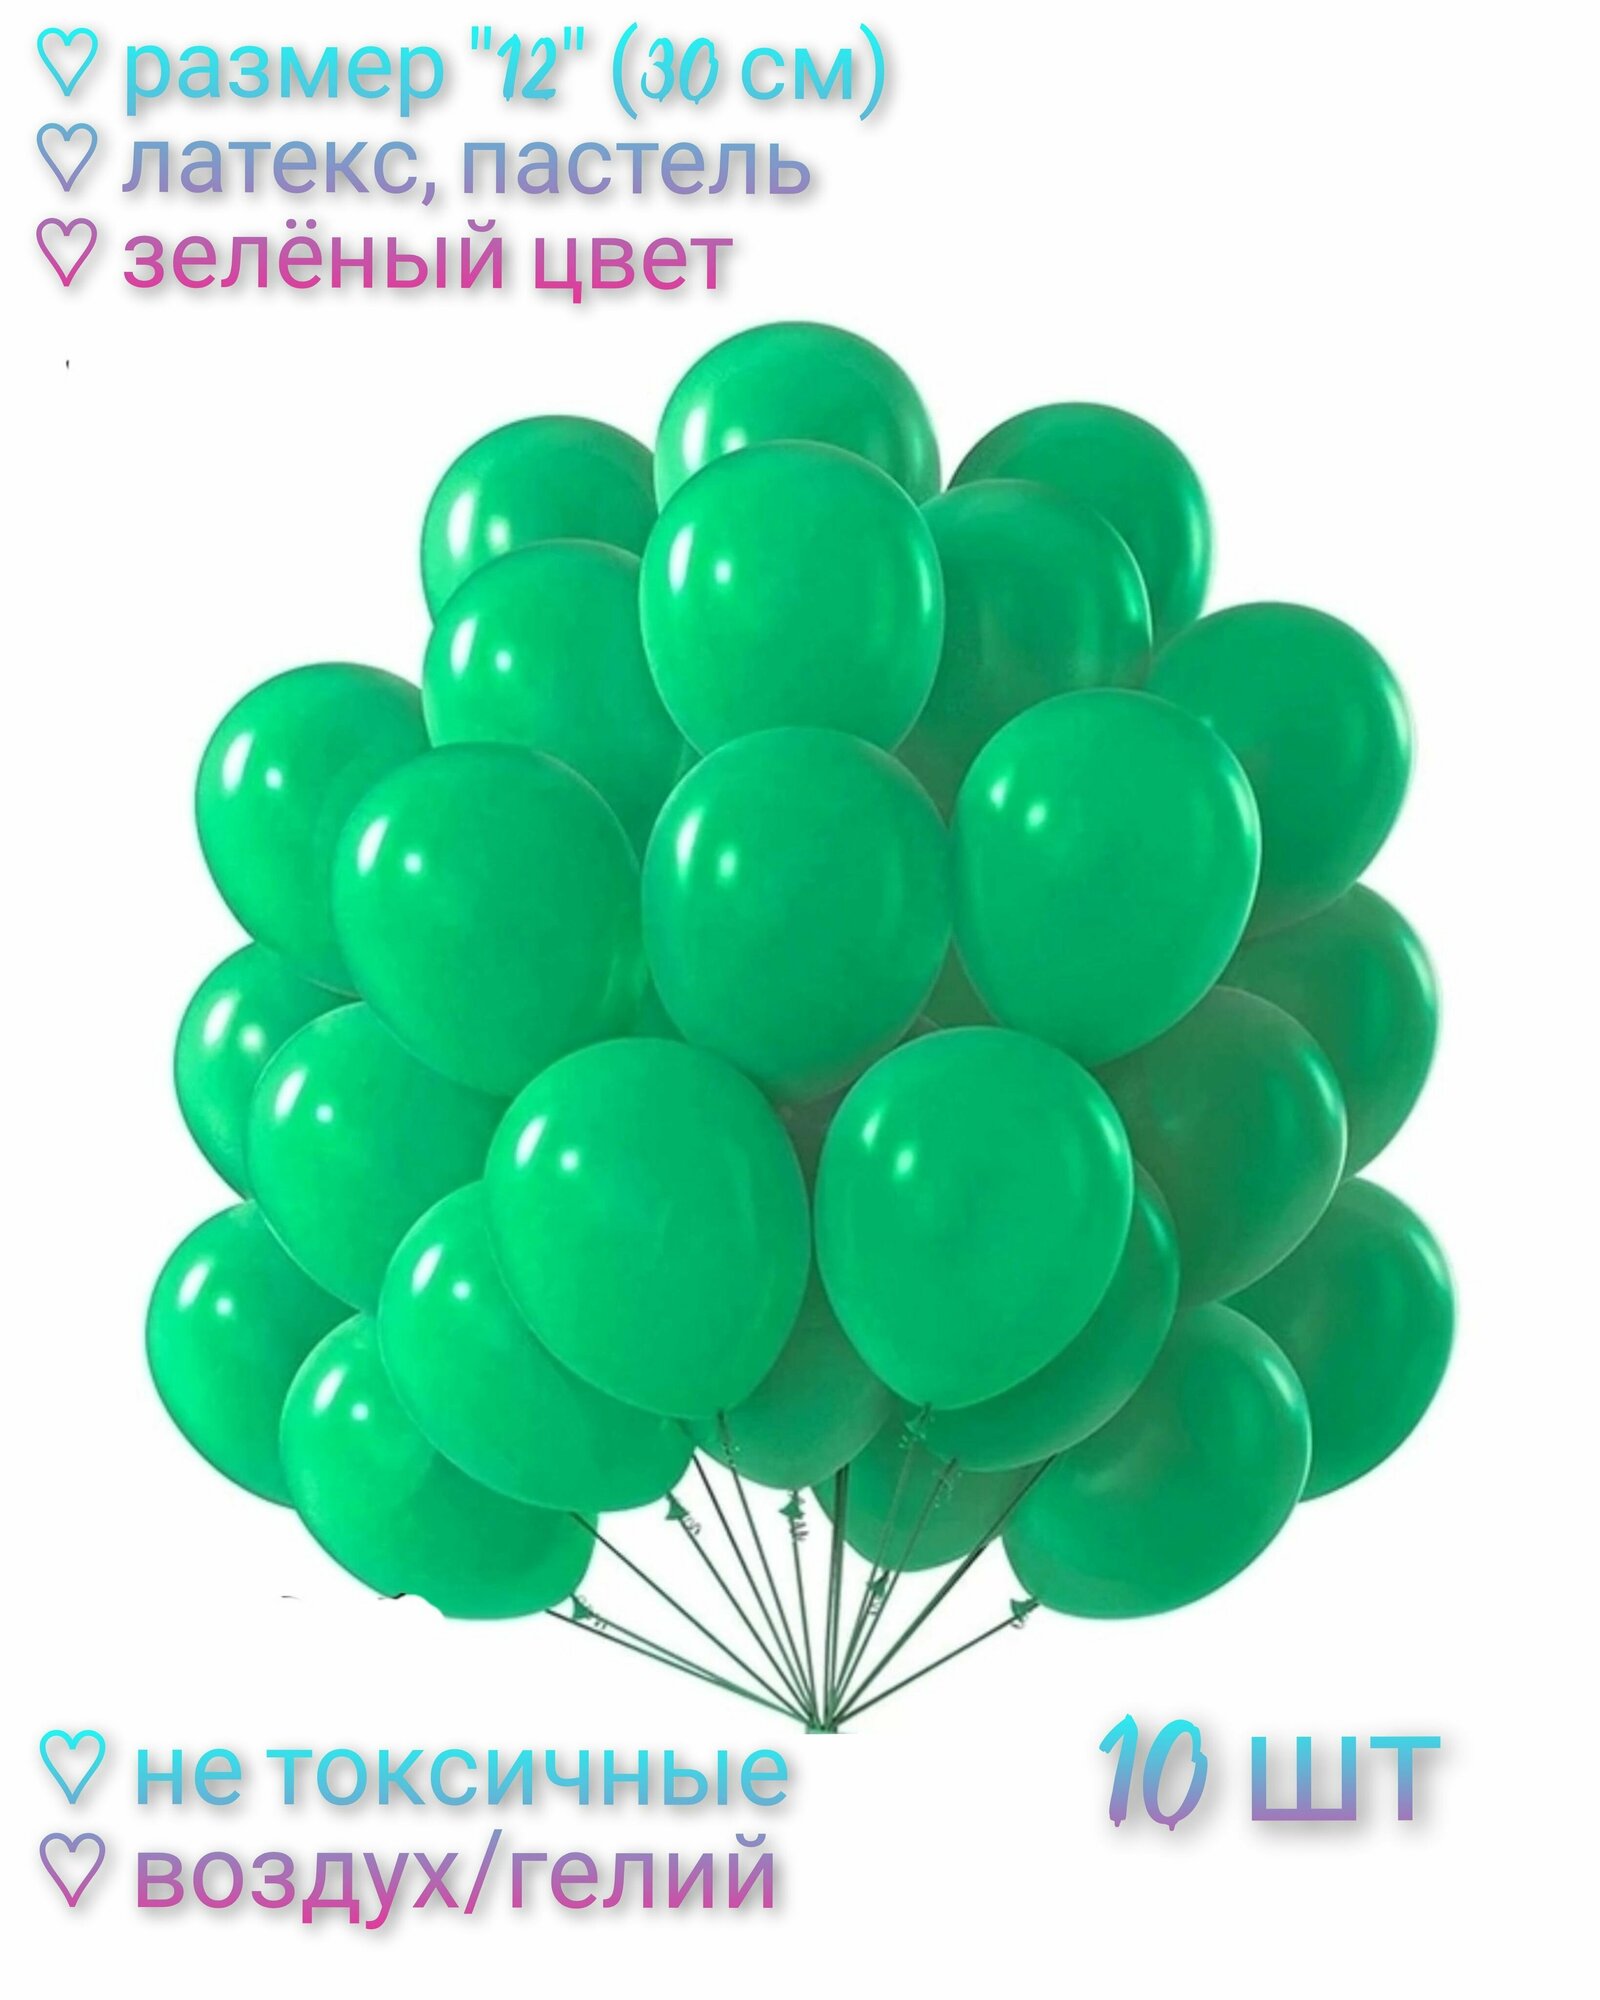 Набор воздушных шаров "12" (30 см) - 10 шт. Латекс/Пастель. Цвет зеленый.